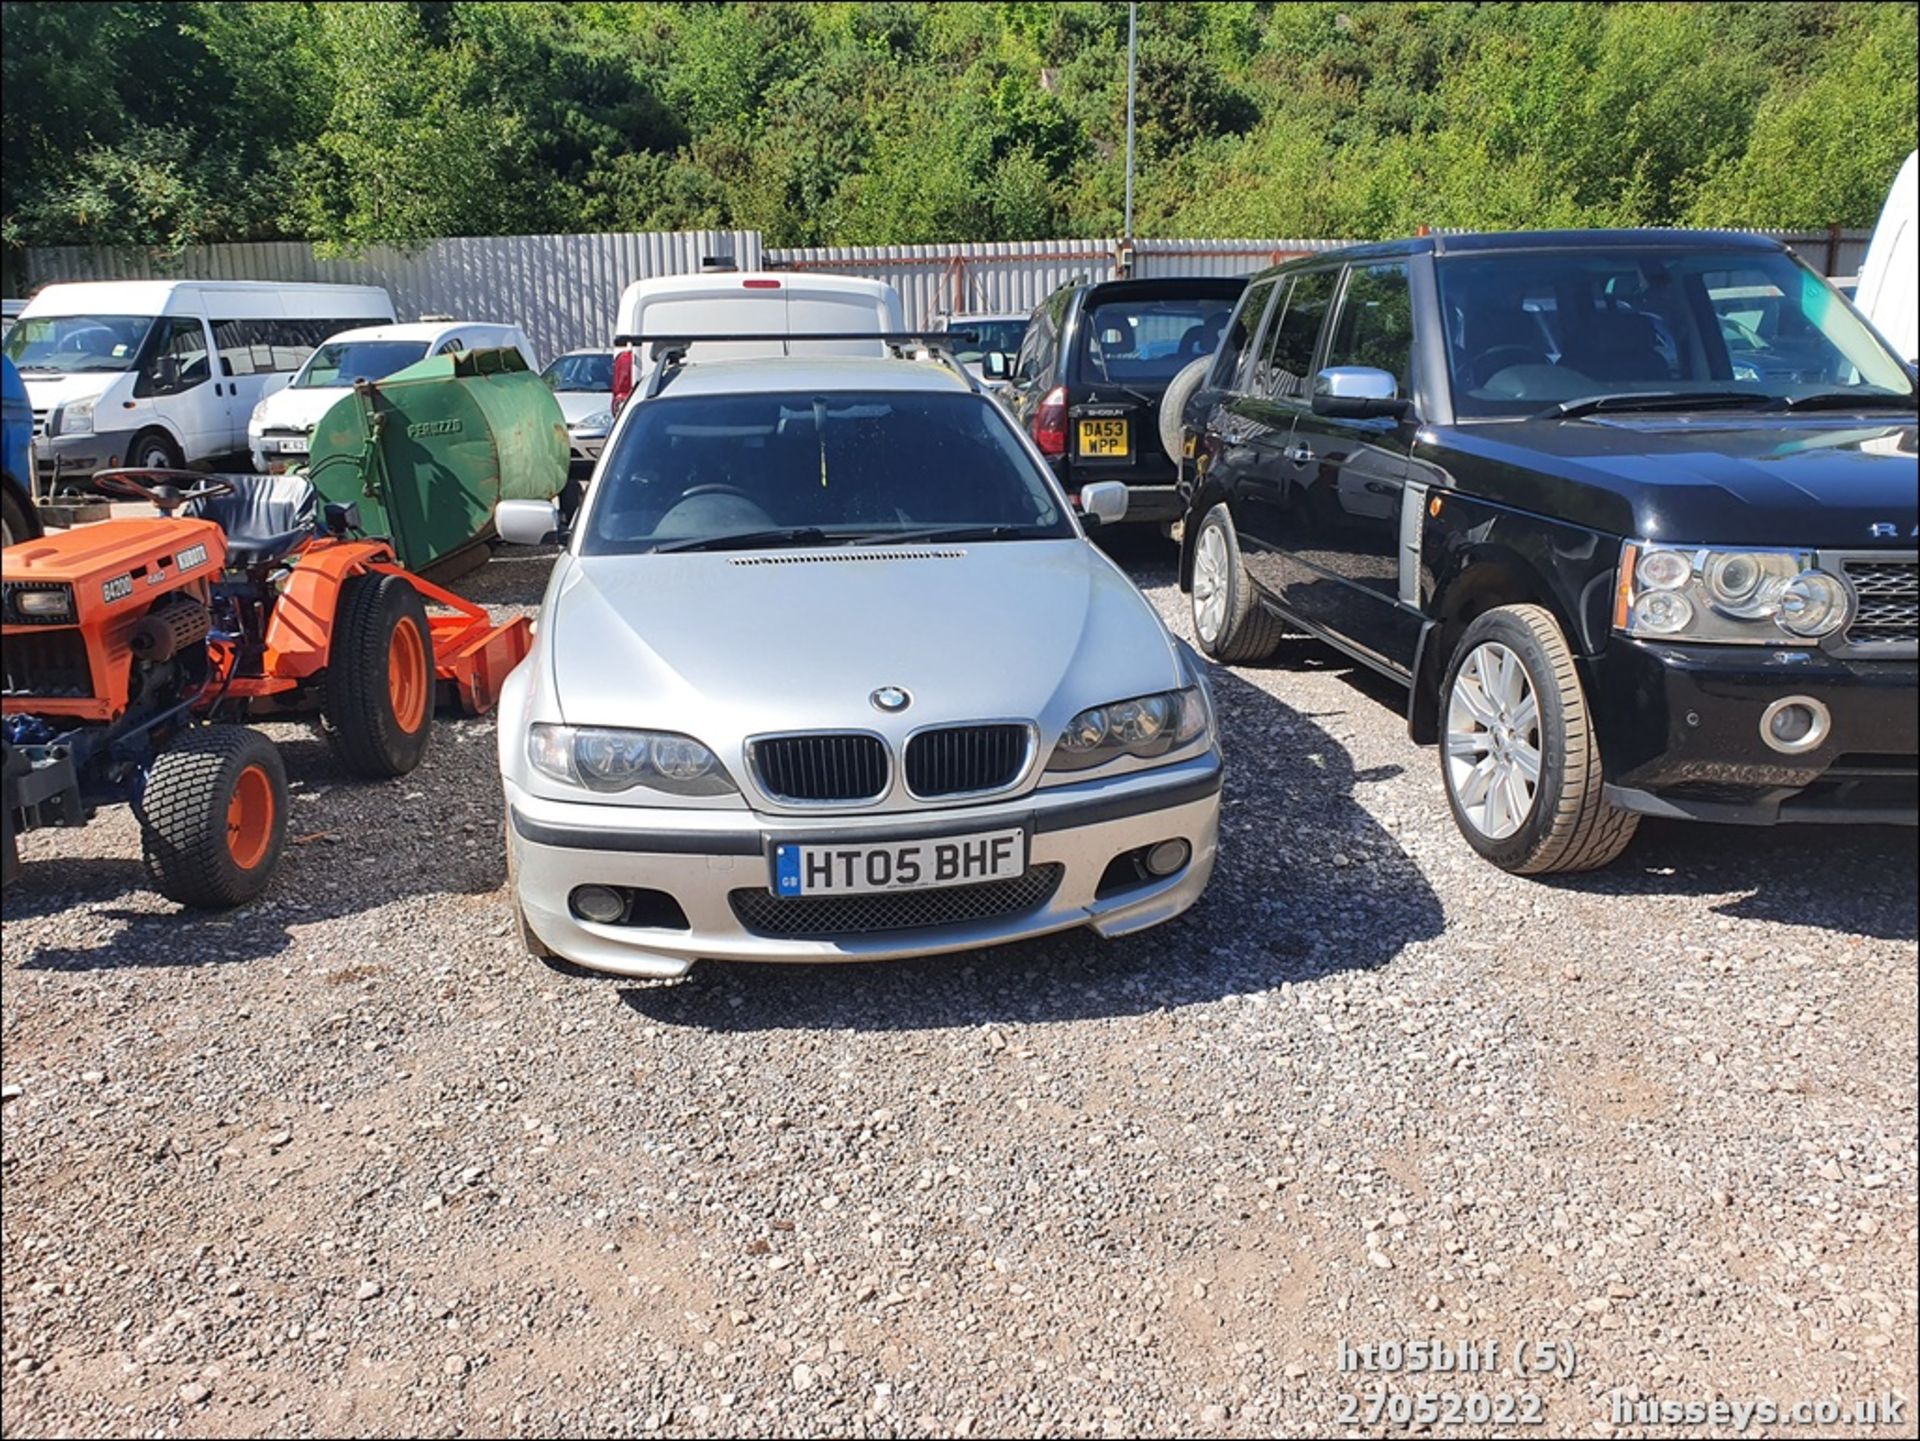 05/05 BMW 320D SPORT AUTO - 1995cc 5dr Estate (Silver, 174k) - Image 5 of 21